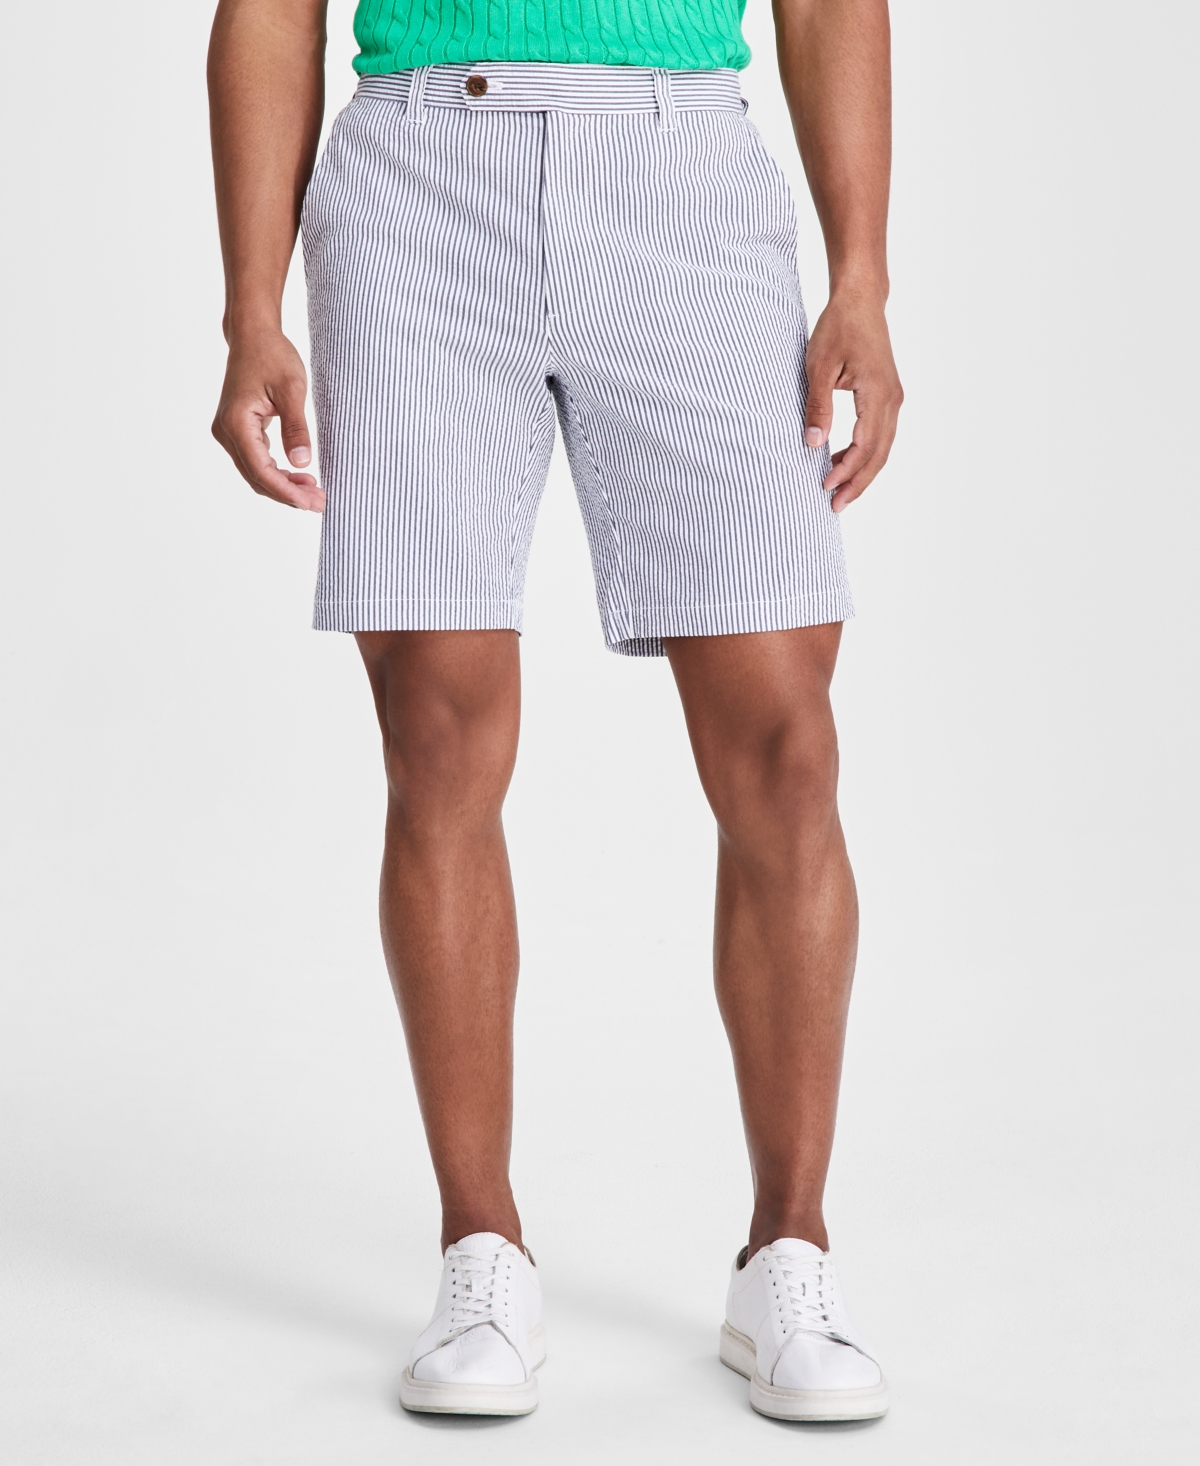 Men's Seersucker Shorts, Created for Macy's - Basic Navy